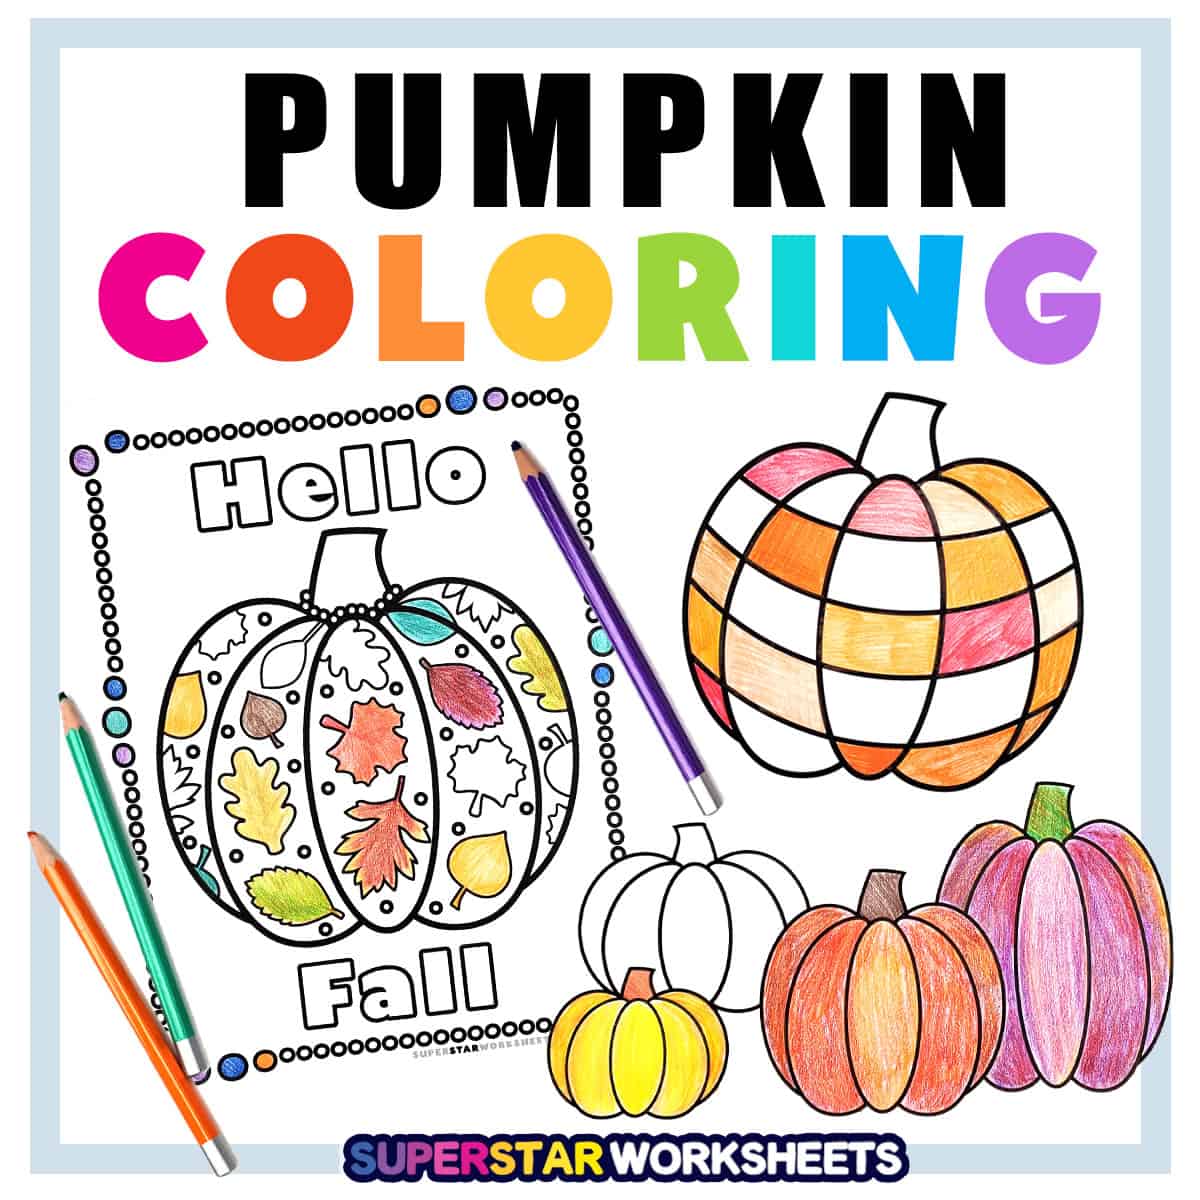 Pumpkin Coloring Pages - Superstar Worksheets